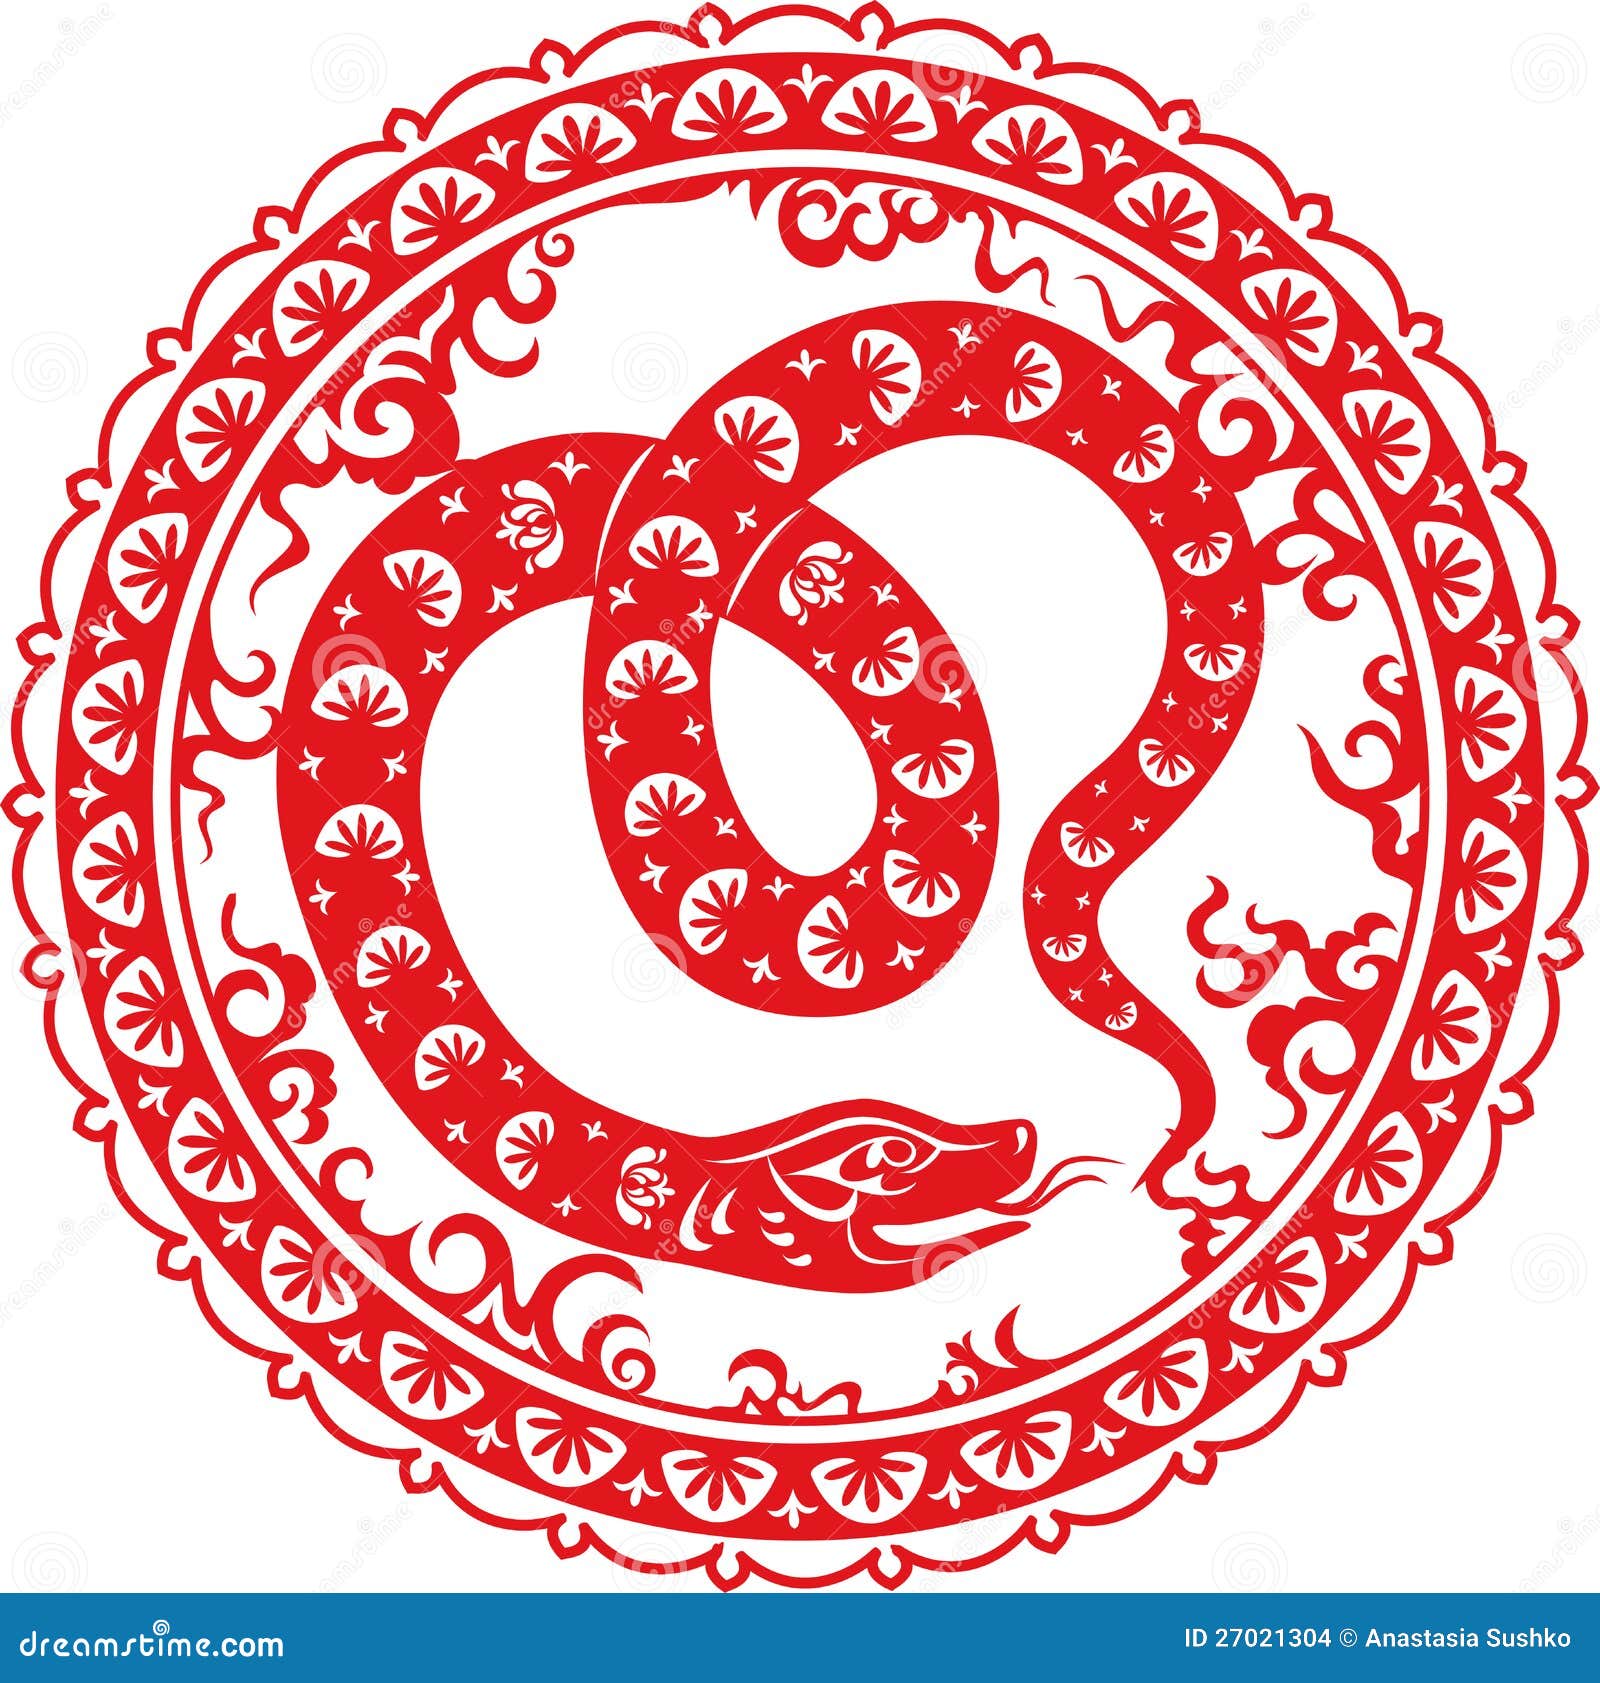 Восточный календарь змея. Год змеи символ китайский. Зодиак змея. Китайский 2013 год змеи. Китайская змея символ года.